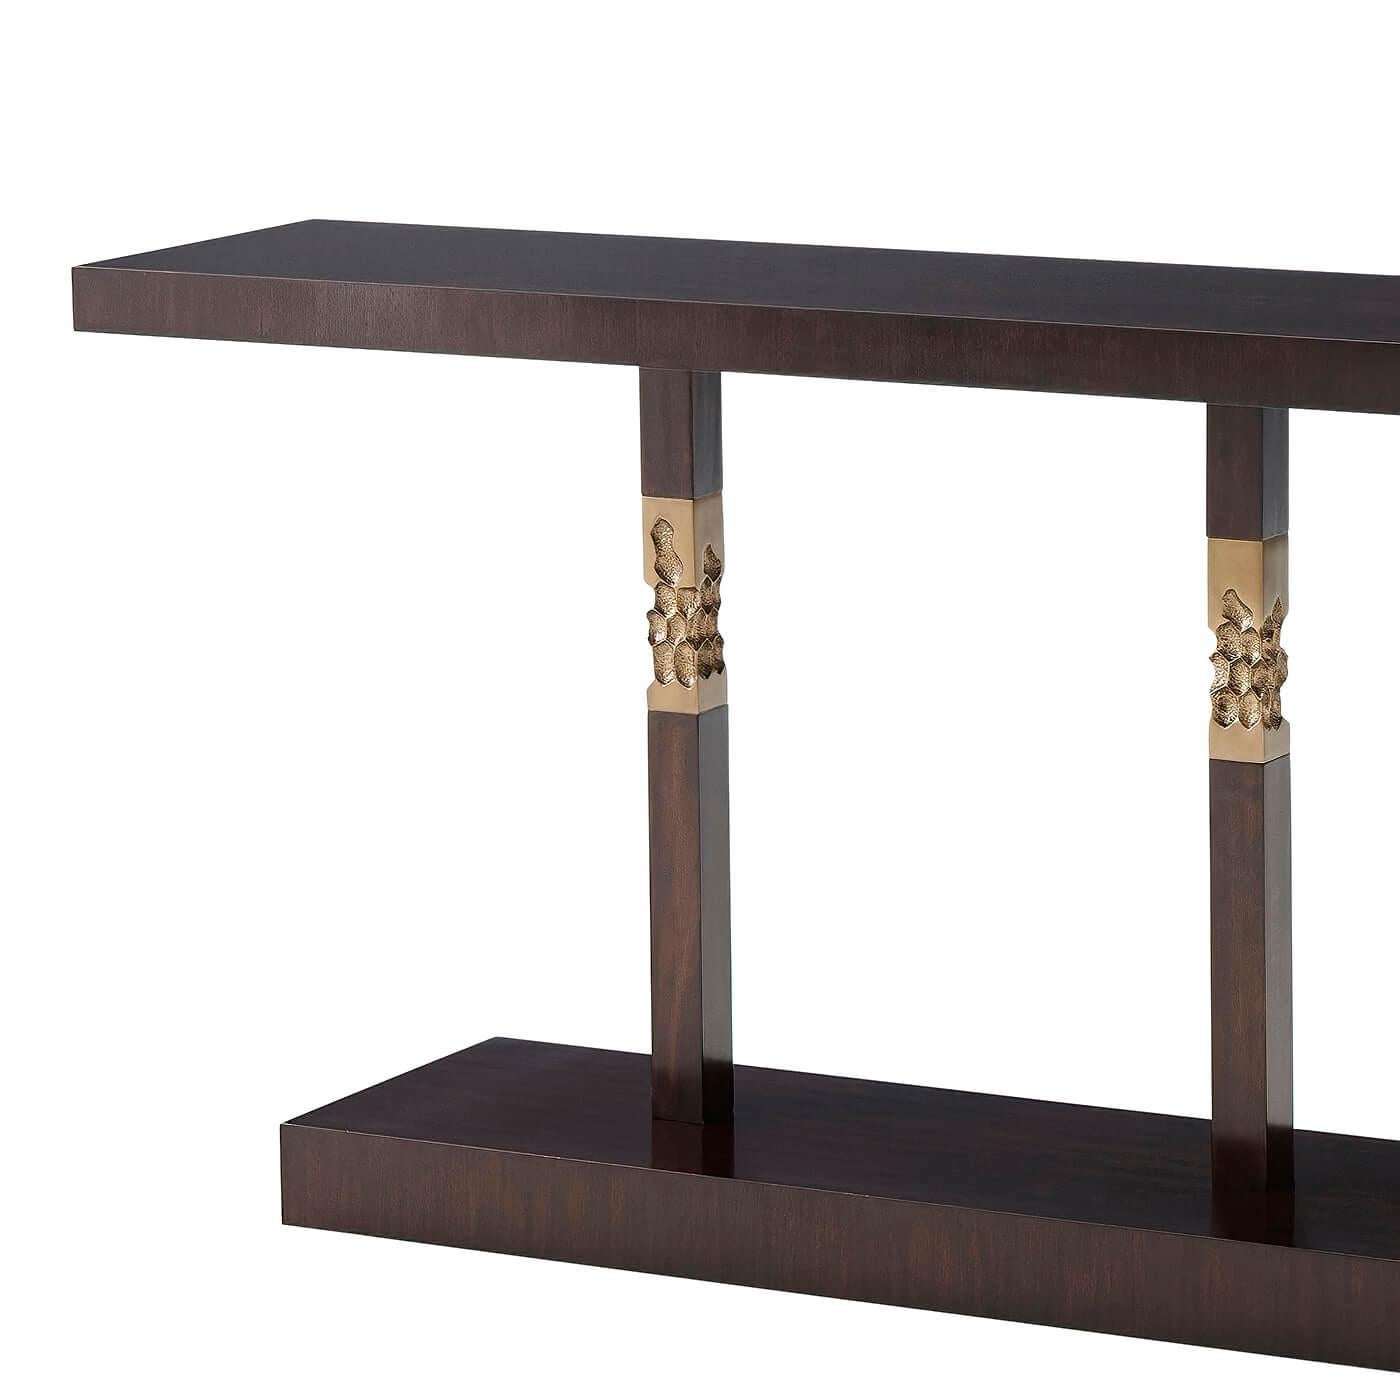 Table console moderne en acajou massif et placage dans une finition espresso avec des colonnes carrées brutalistes accentuées de laiton texturé.
Dimensions : 80